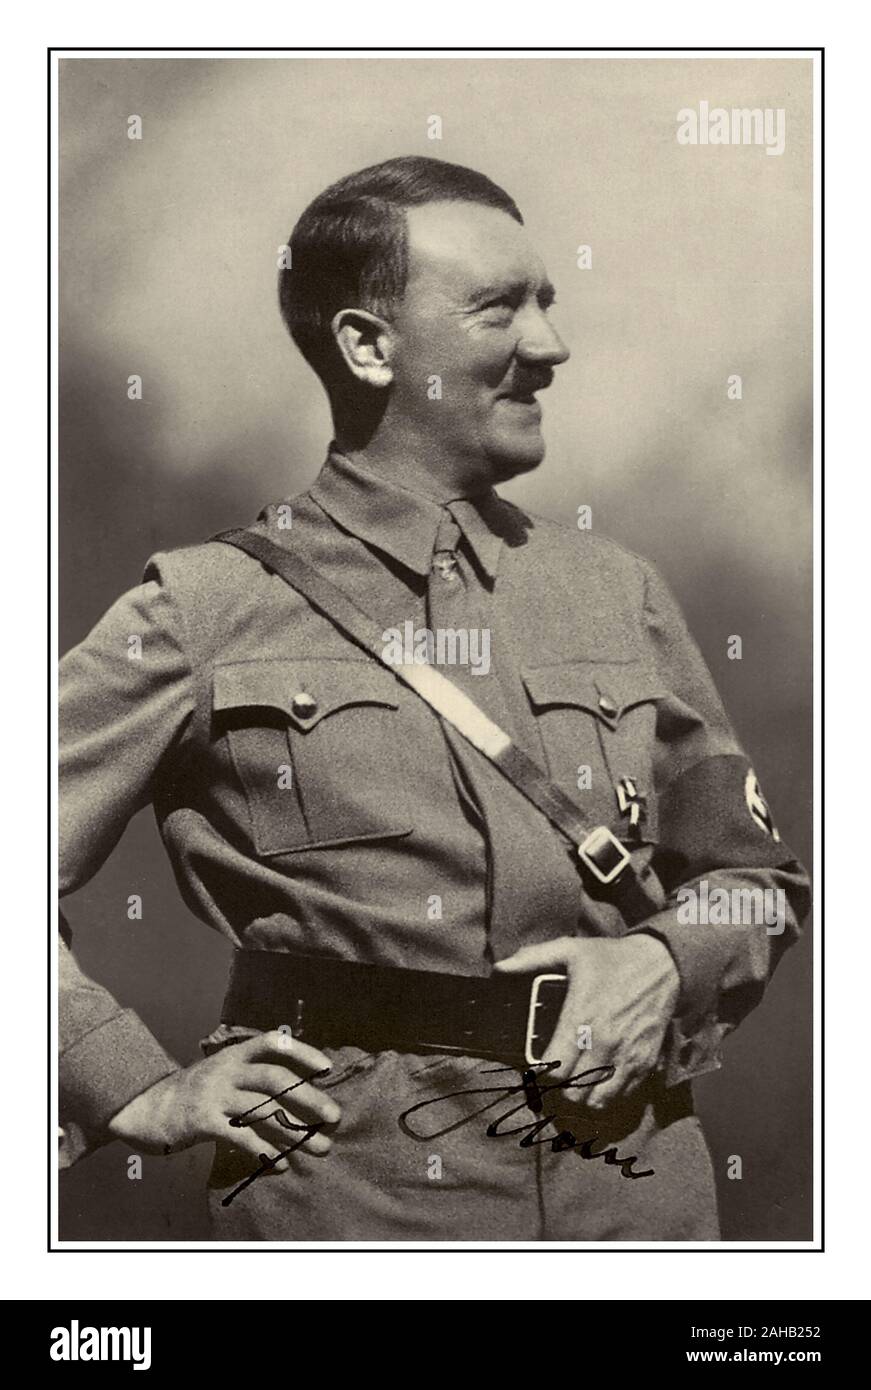 ADOLF HITLER (1889 - 1945) Führer du Troisième Reich Allemagne 1934-1945. signé la propagande publicitaire photographie carte postale. Nazi Adolf Hitler en uniforme militaire portant un brassard à croix gammée. Signé par Adolf Hitler Banque D'Images